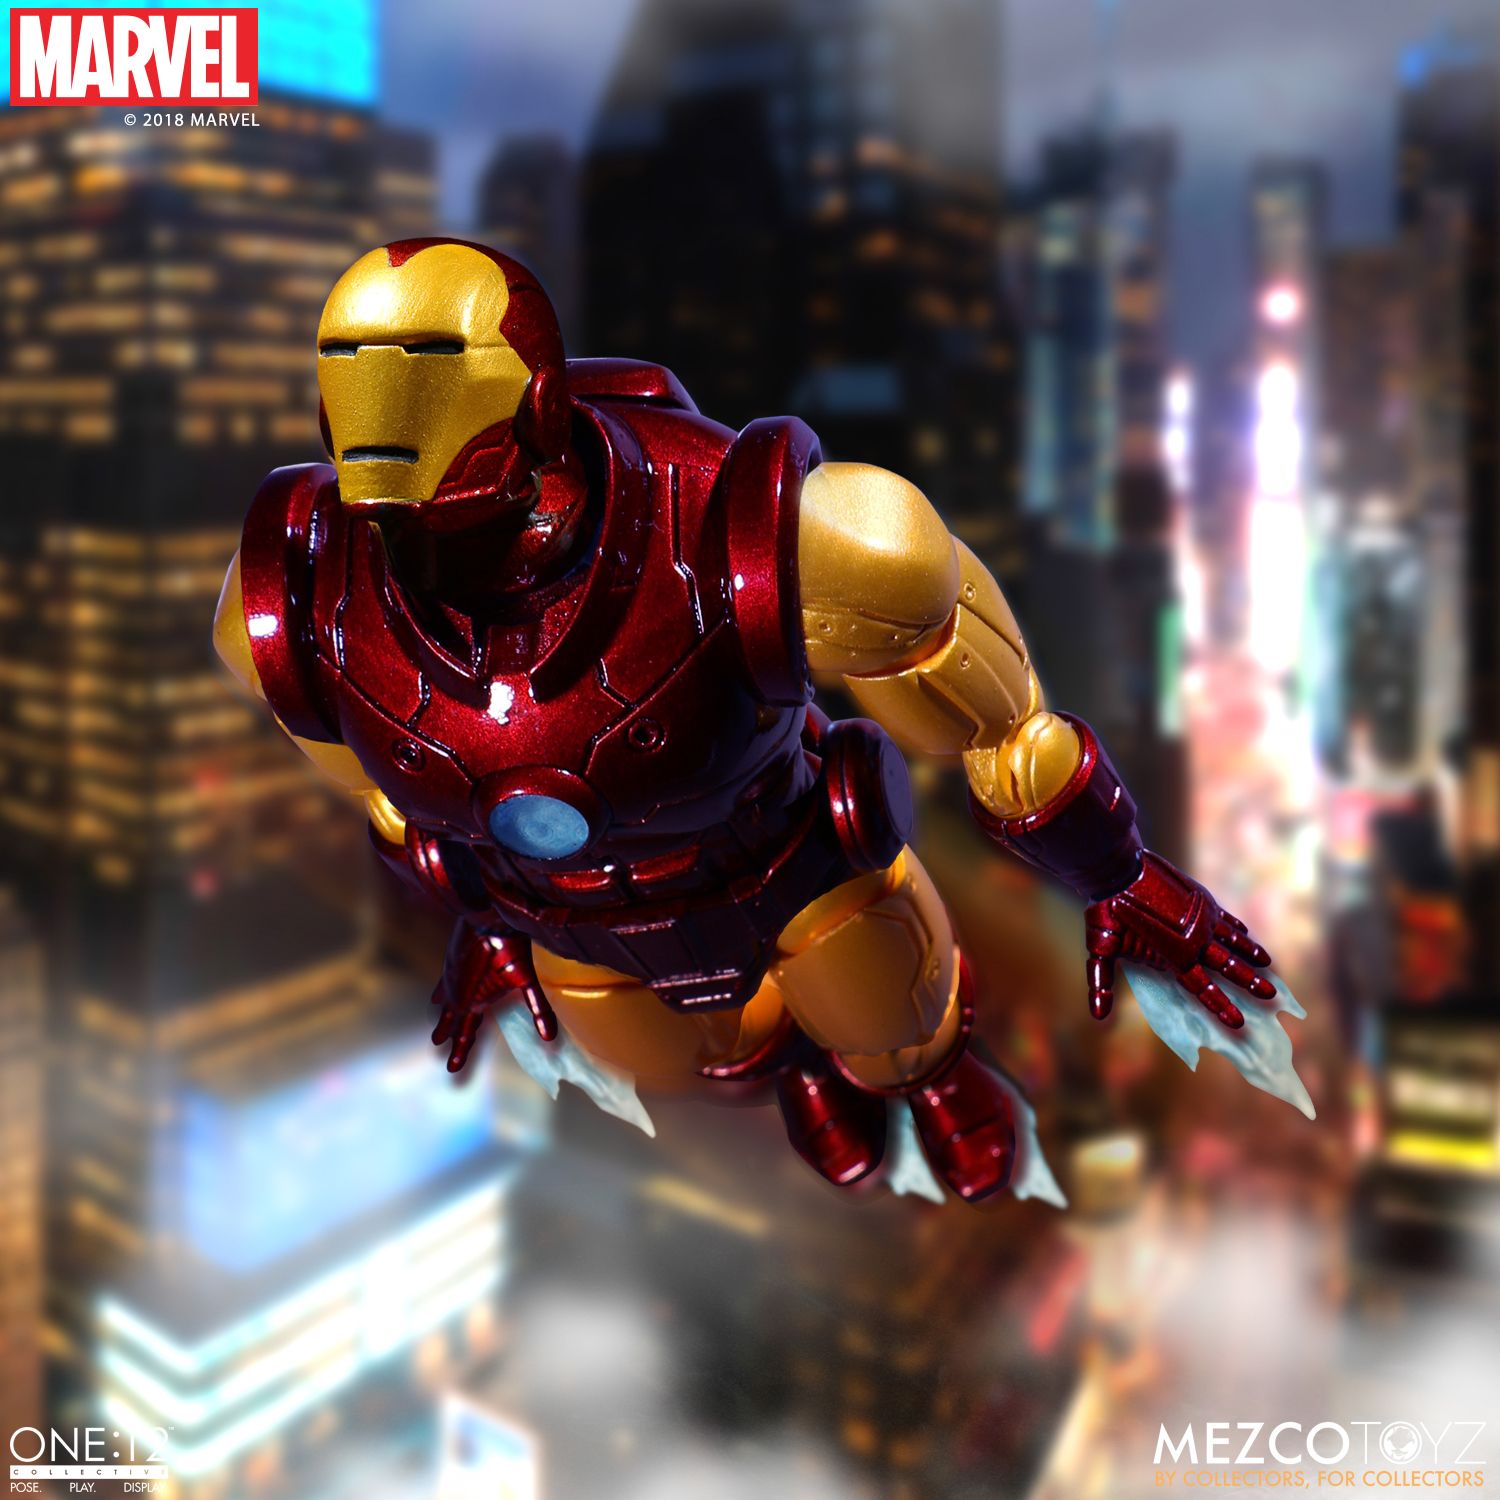 Mezco-Iron-Man-One12-Collective-004